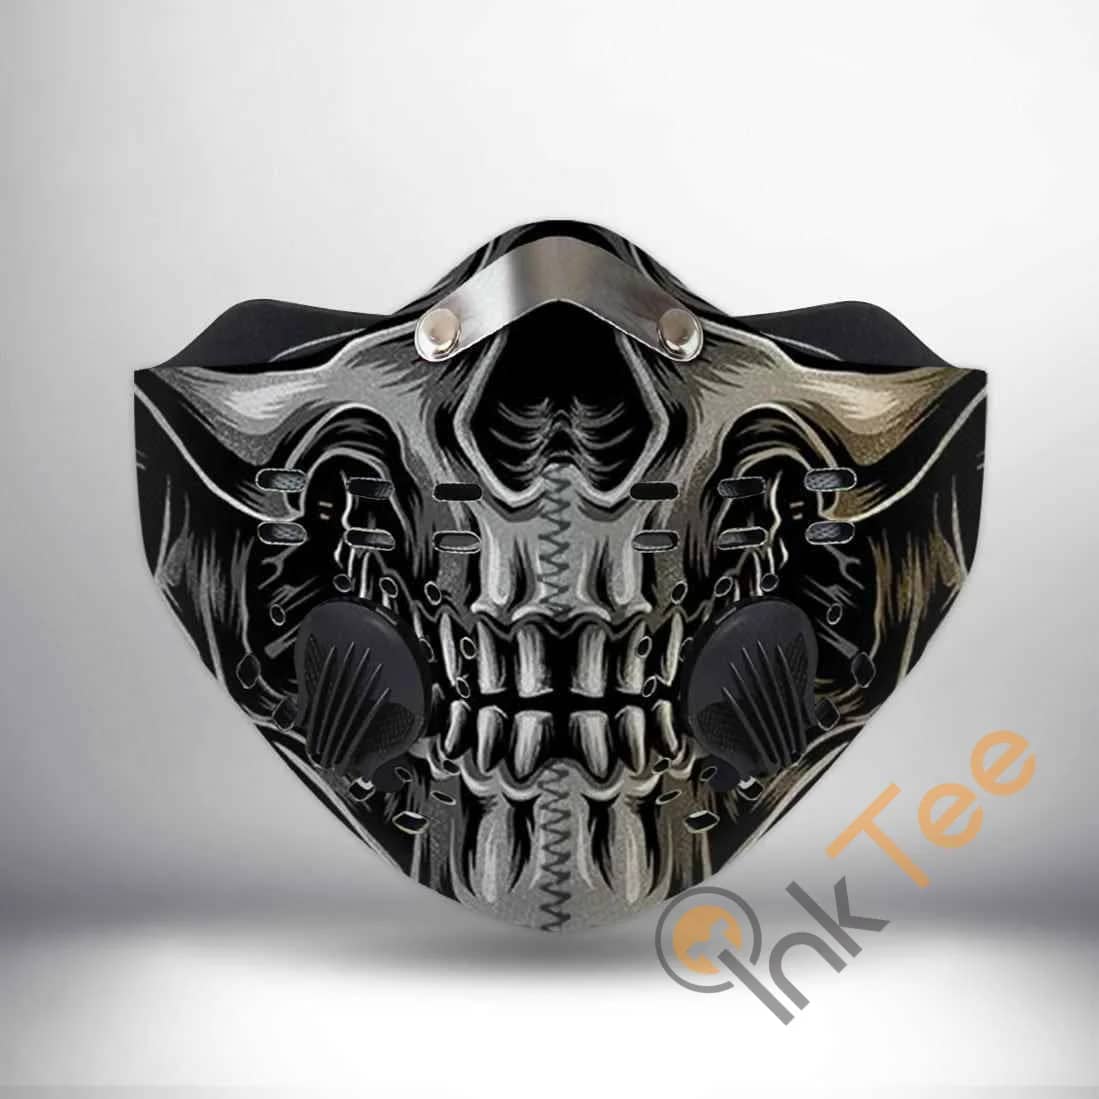 Skull Coolest Filter Activated Carbon Pm 2.5 Fm Sku 376 Face Mask